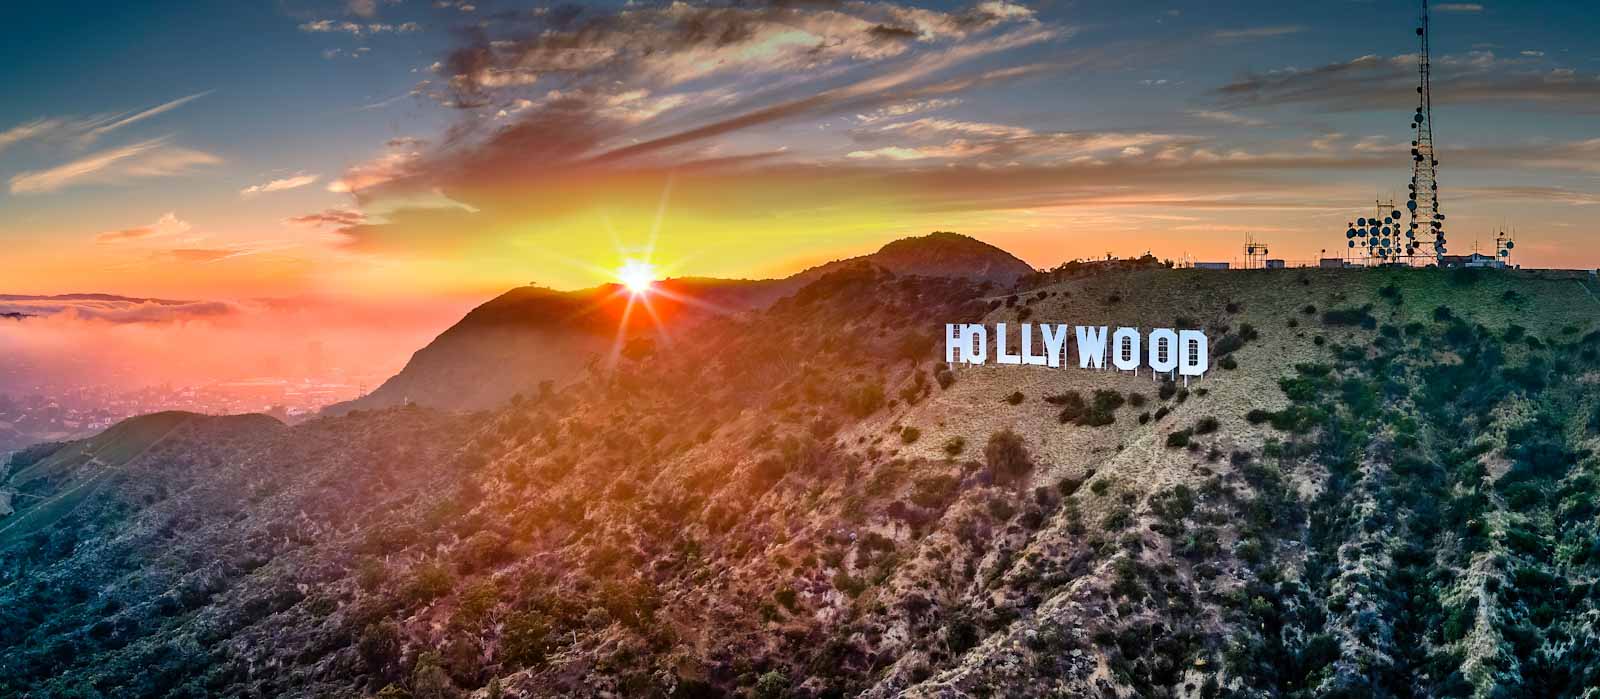 Top Pop Culture Destinations Hollywood